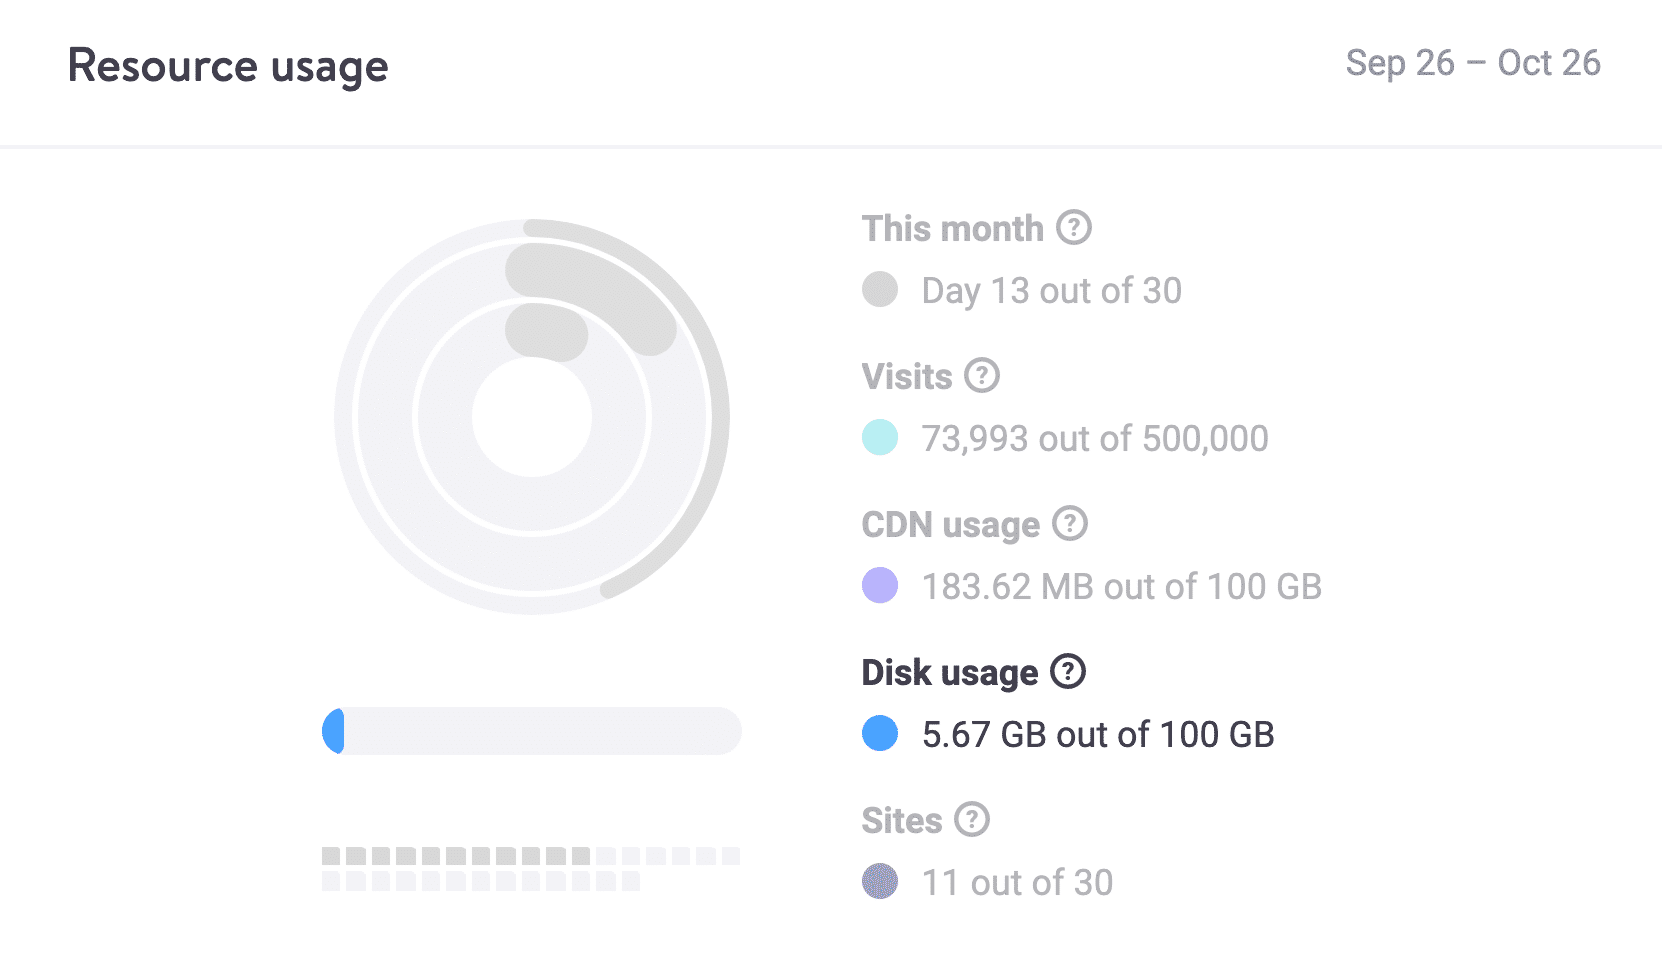 Disk usage overage